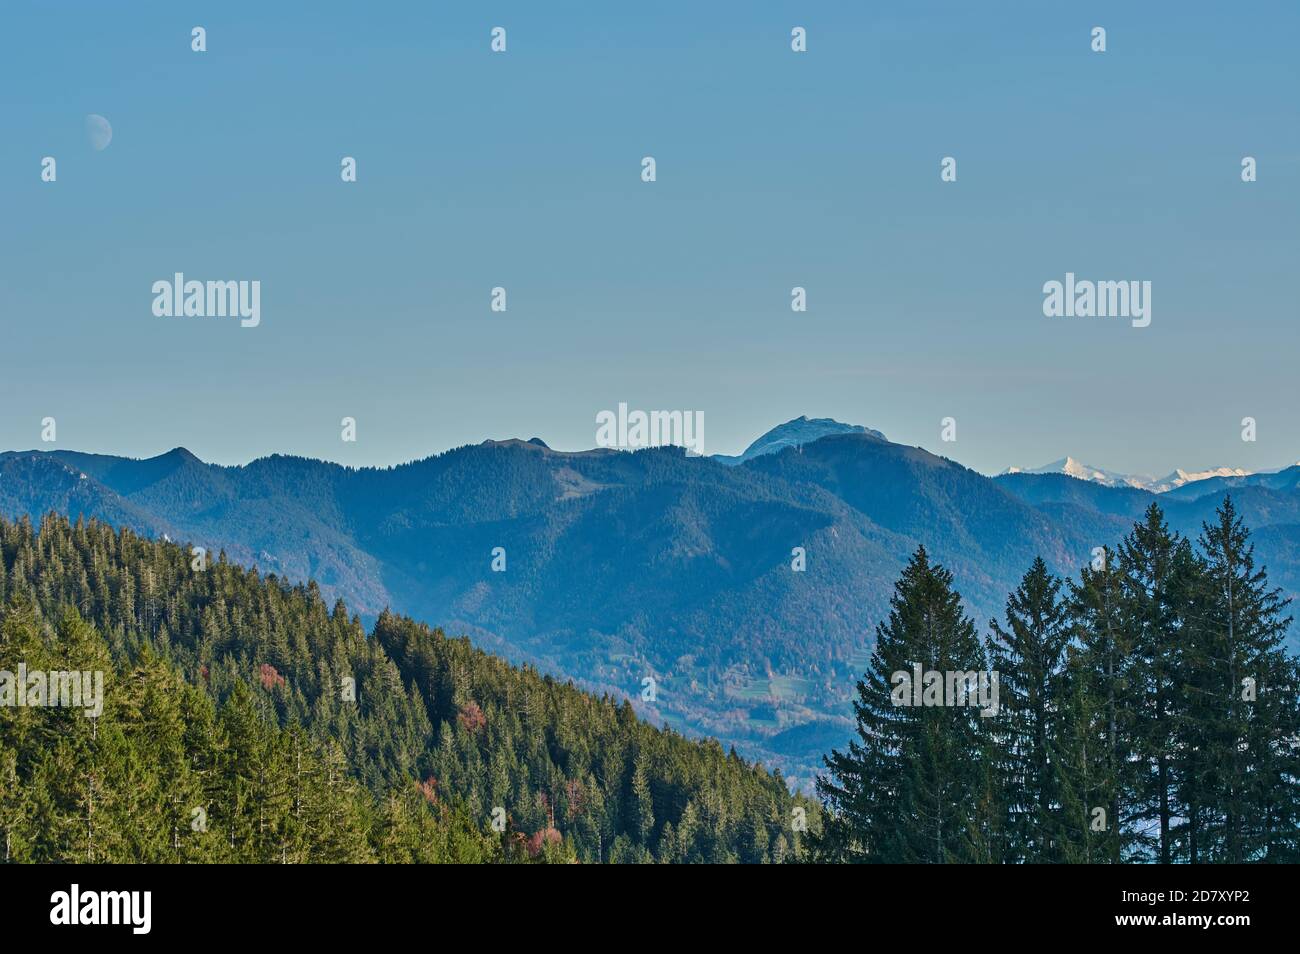 Paesaggio montano panoramico nelle alpi tedesche. Cime innevate delle alpi bavaresi. Cime innevate di montagna con conifere in primo piano. Foto Stock